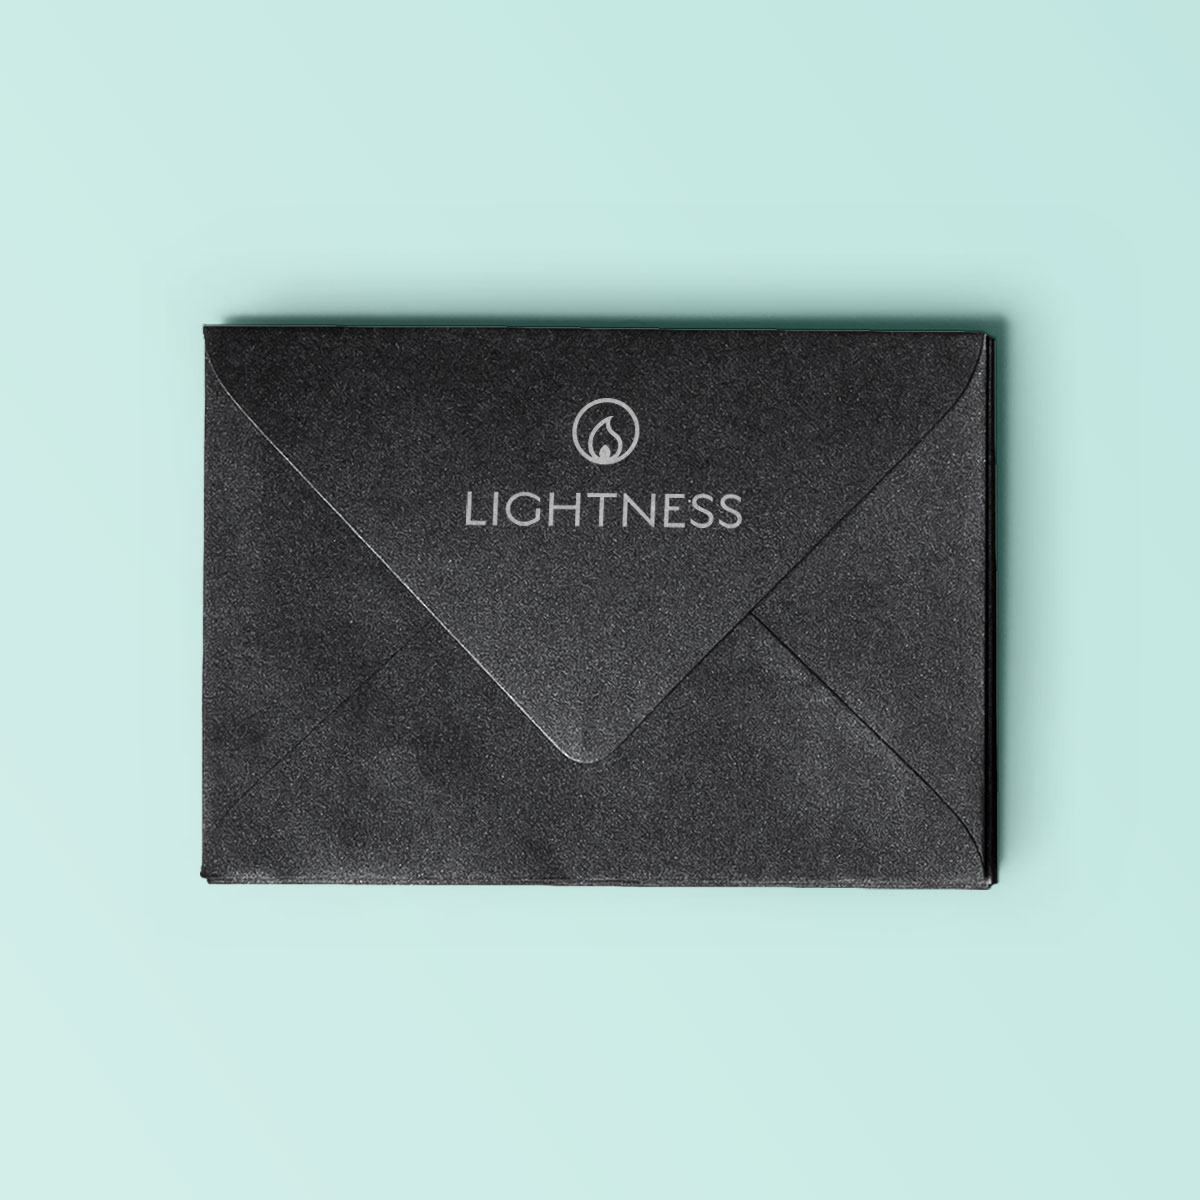 Lightness Brand Design